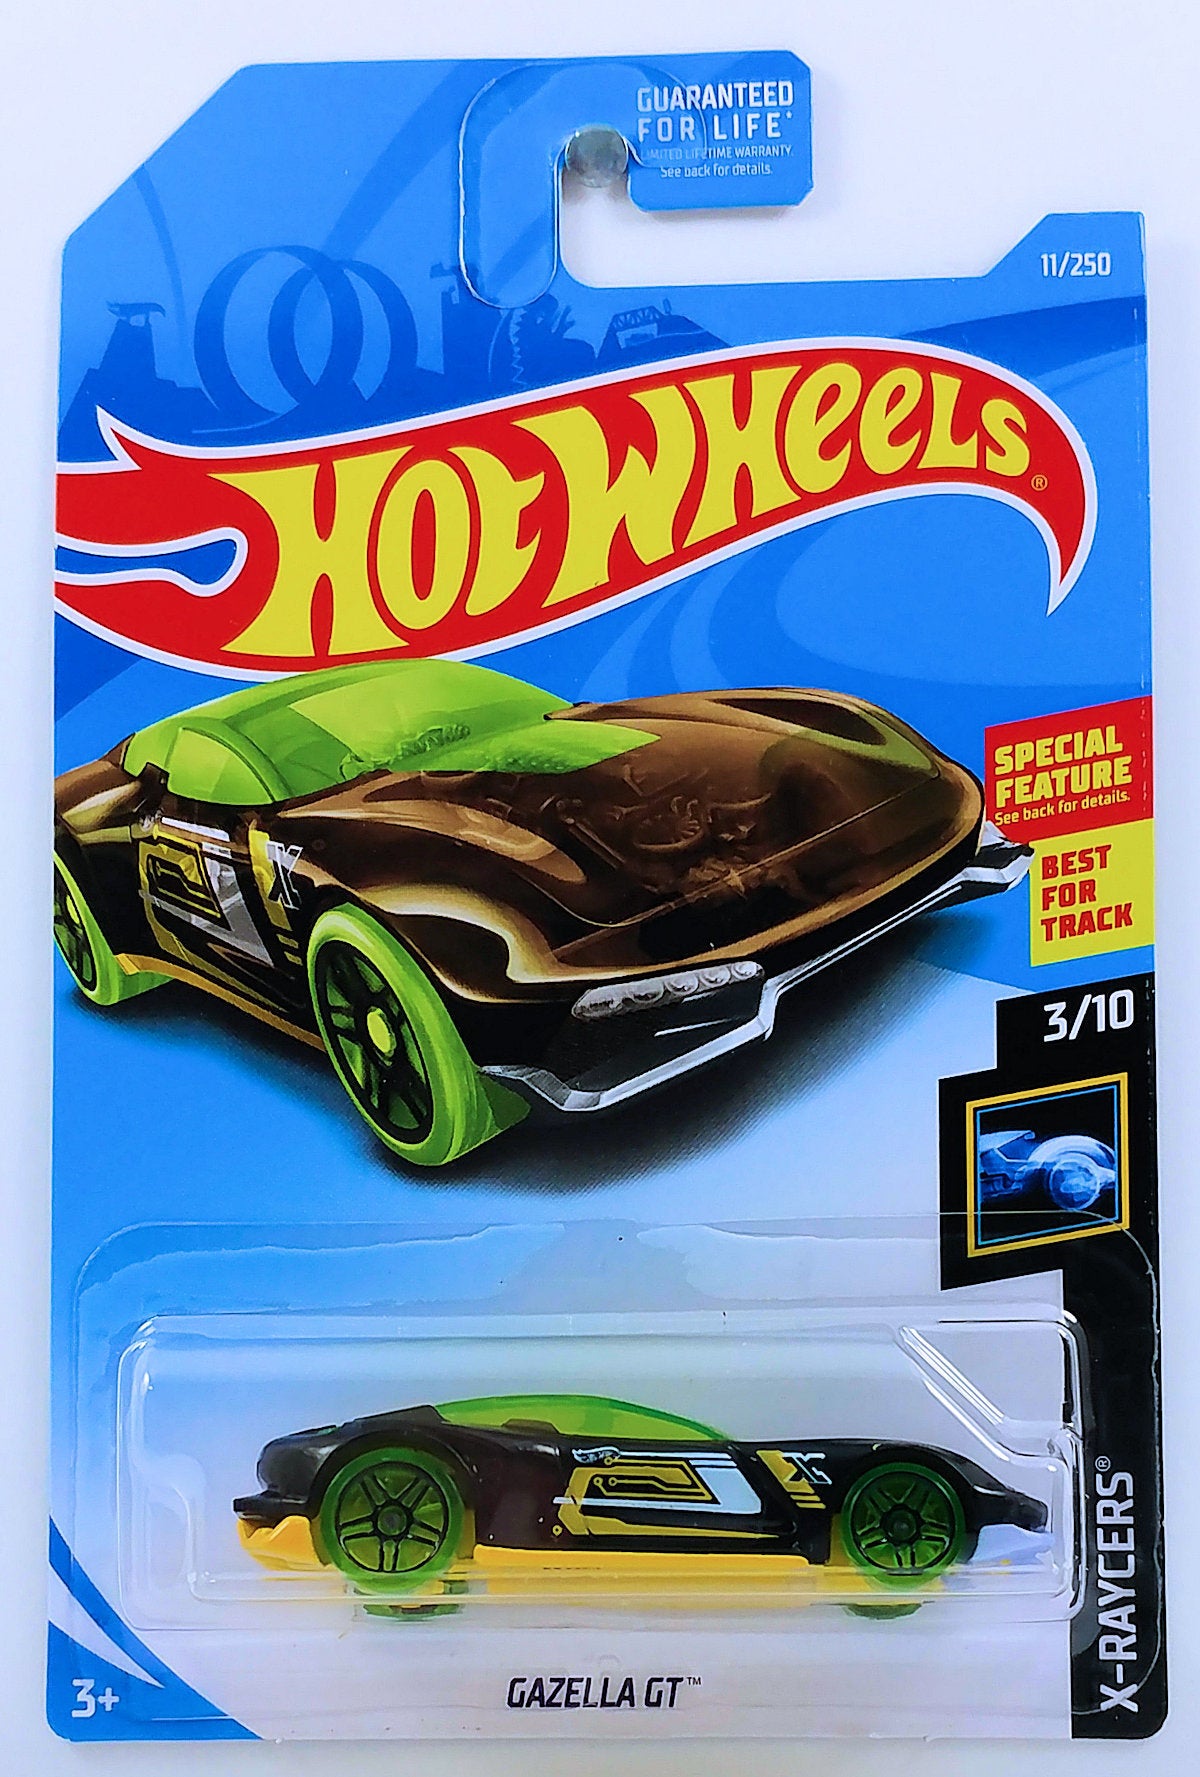 Hot Wheels 2019 - Collectors # 011/250 - Gazella GT